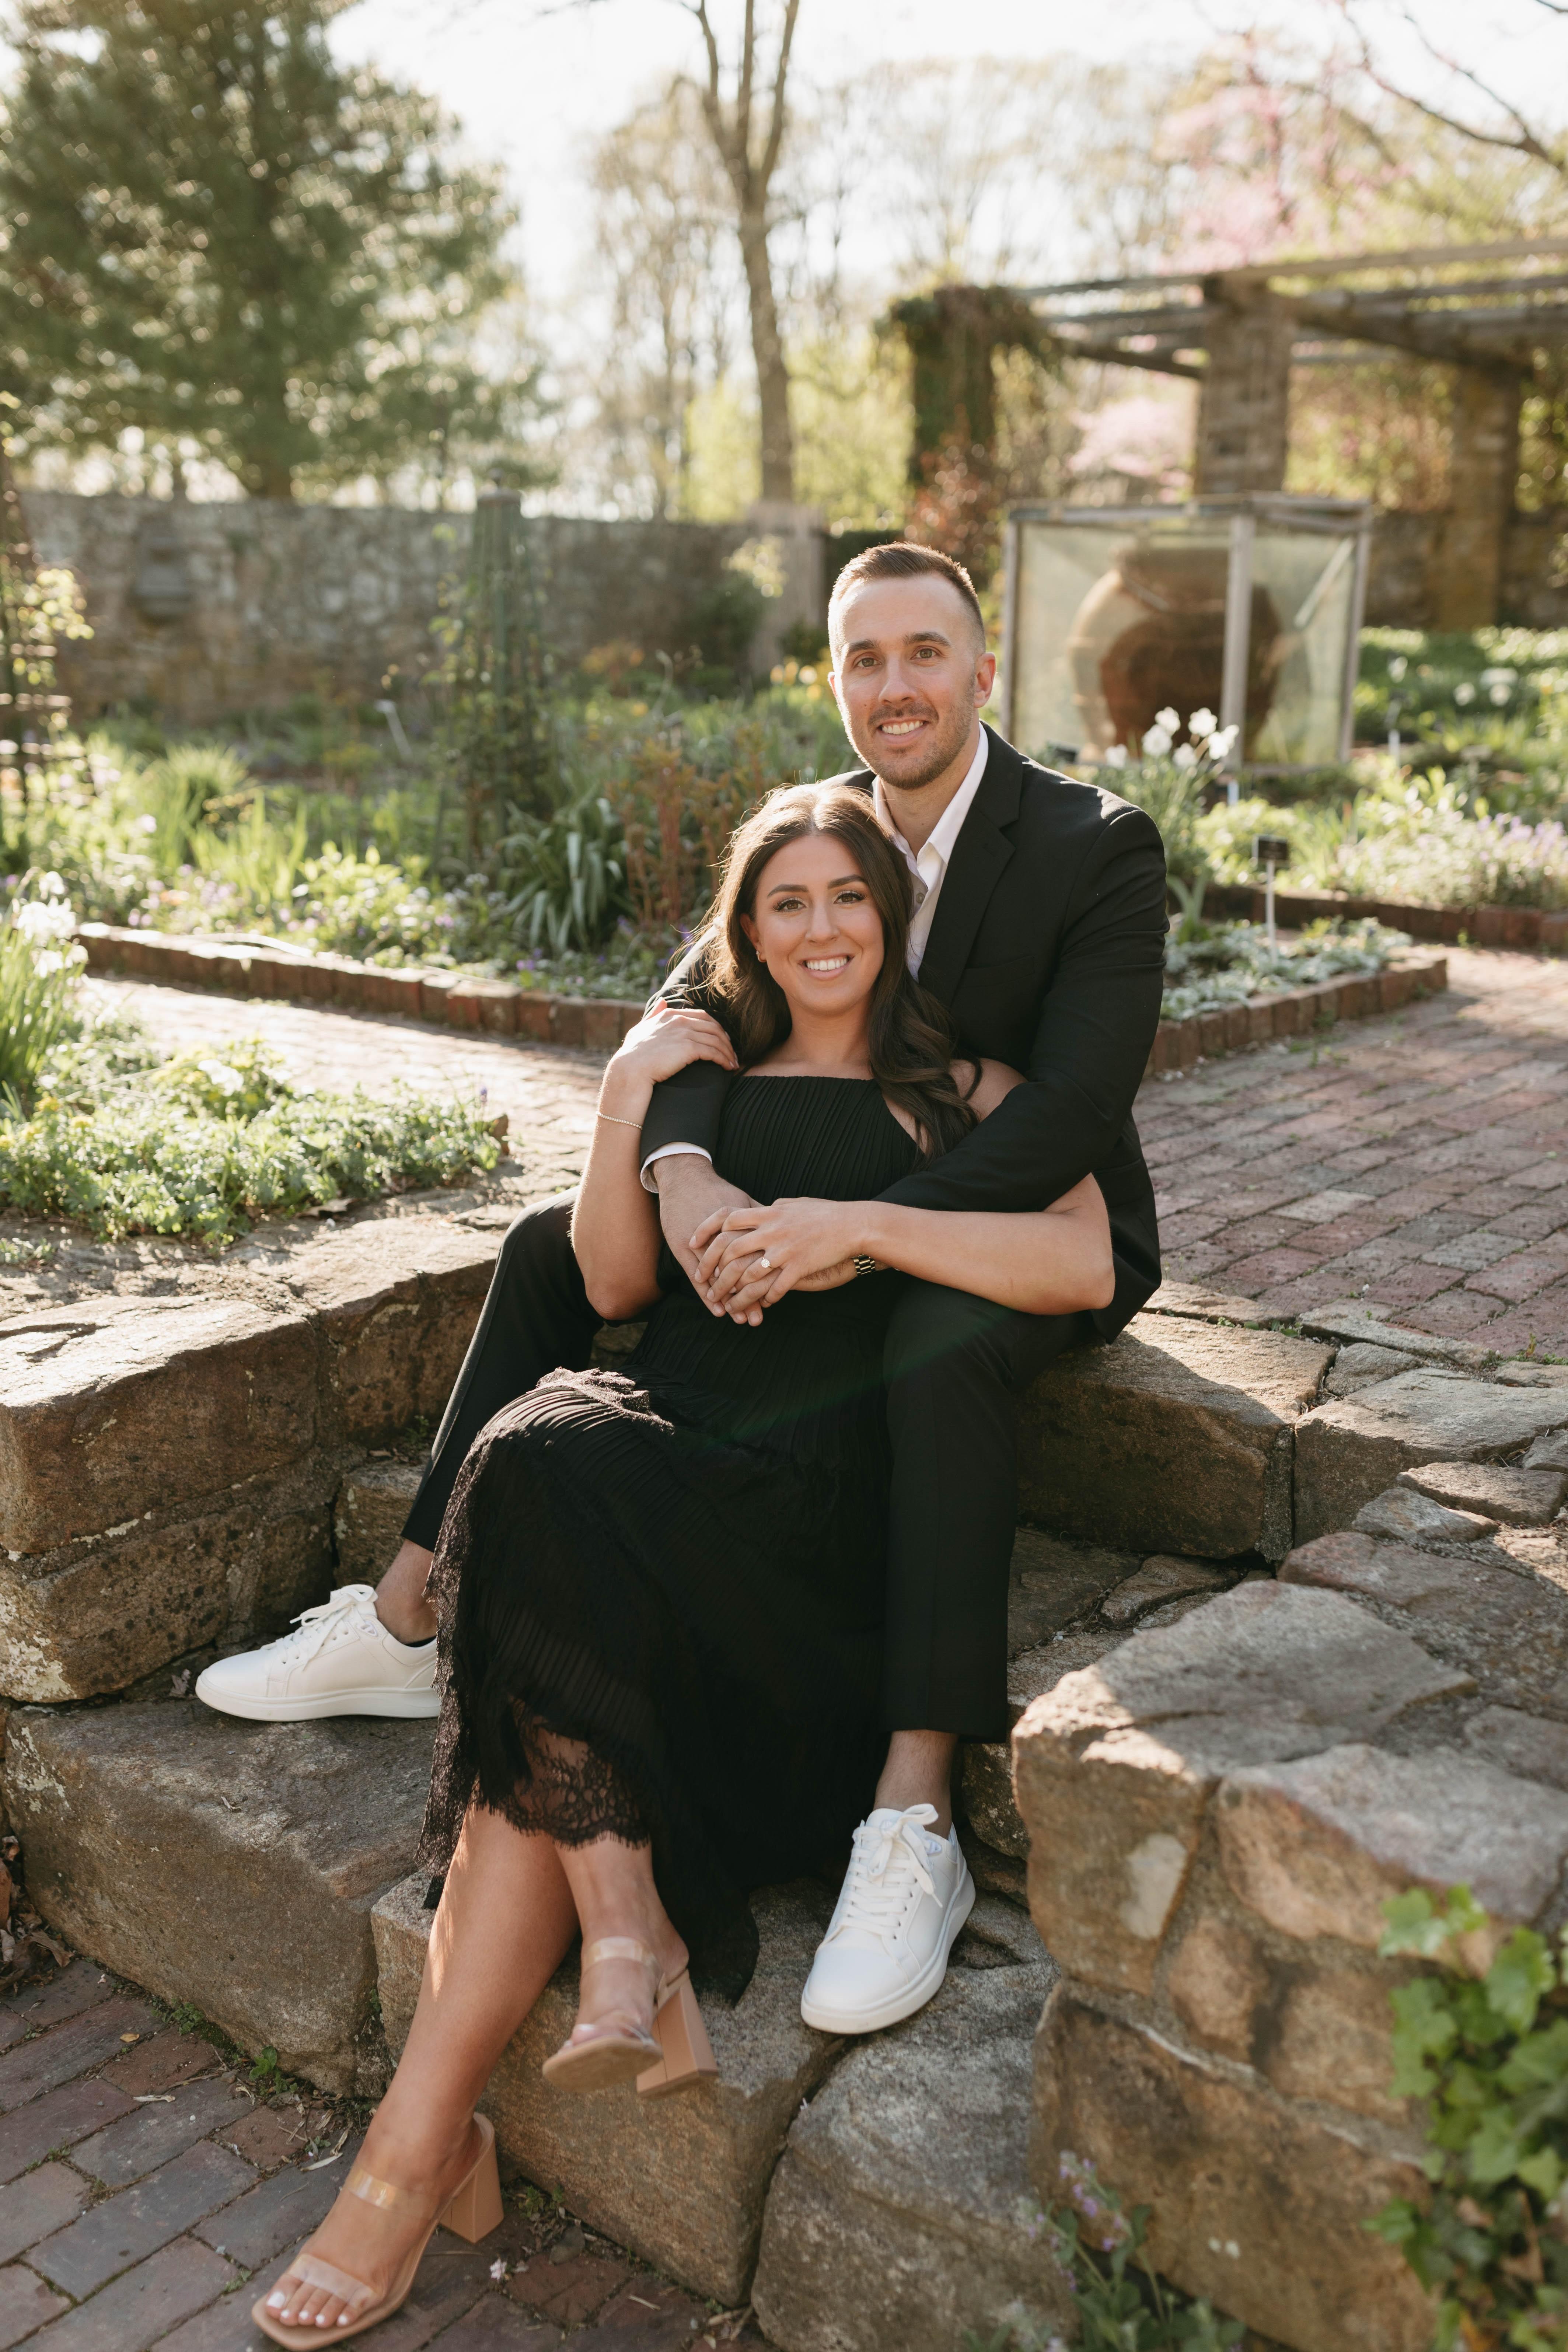 The Wedding Website of Michael Brueno and Danielle Politi